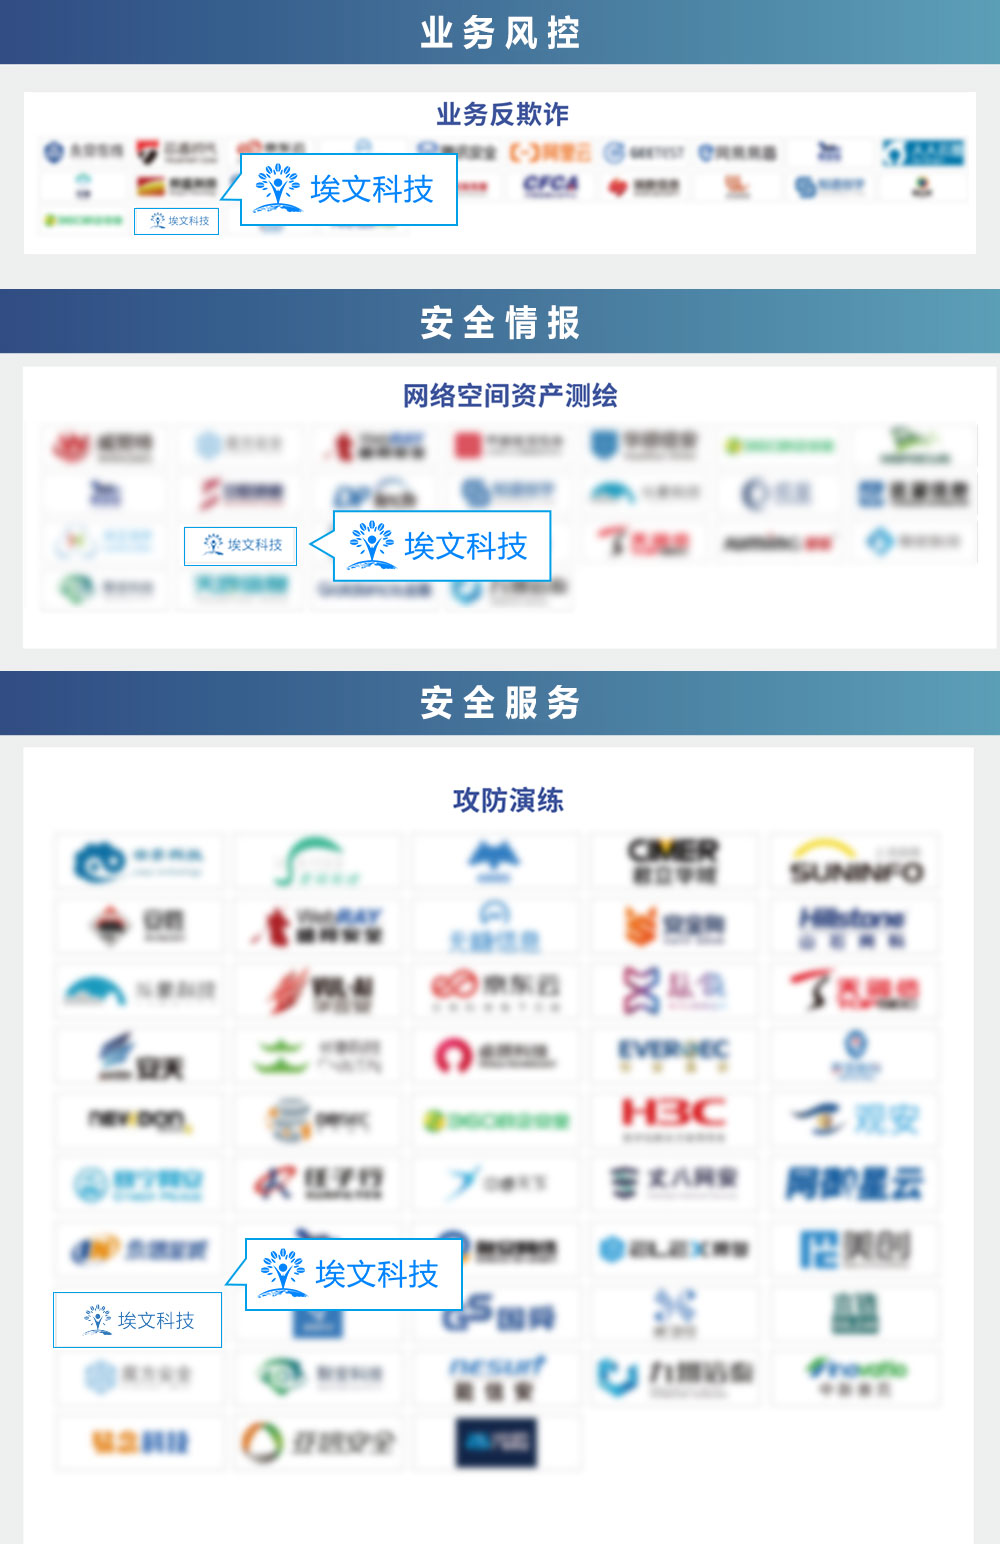 埃文科技上榜CCSIP 2021中国网络安全产业全景图3大安全模块